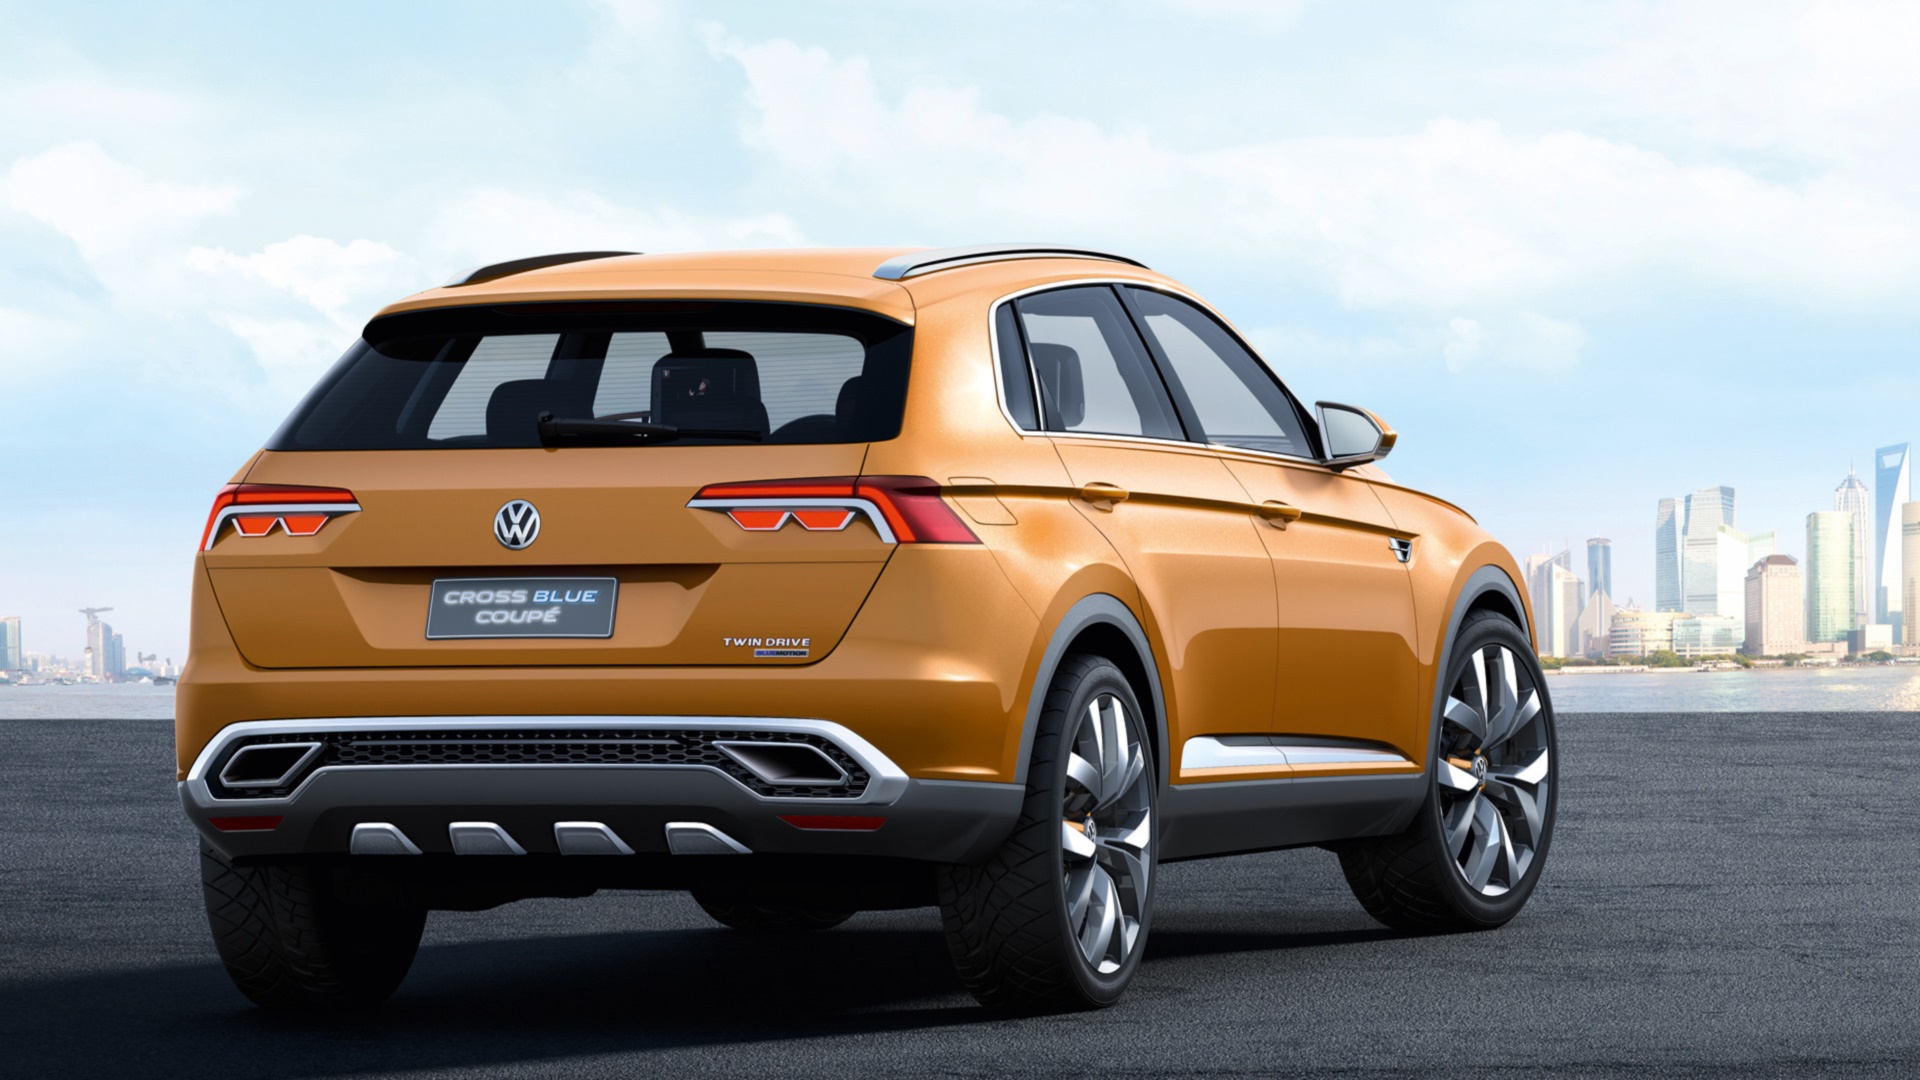 Volkswagen Crossblue Wallpapers